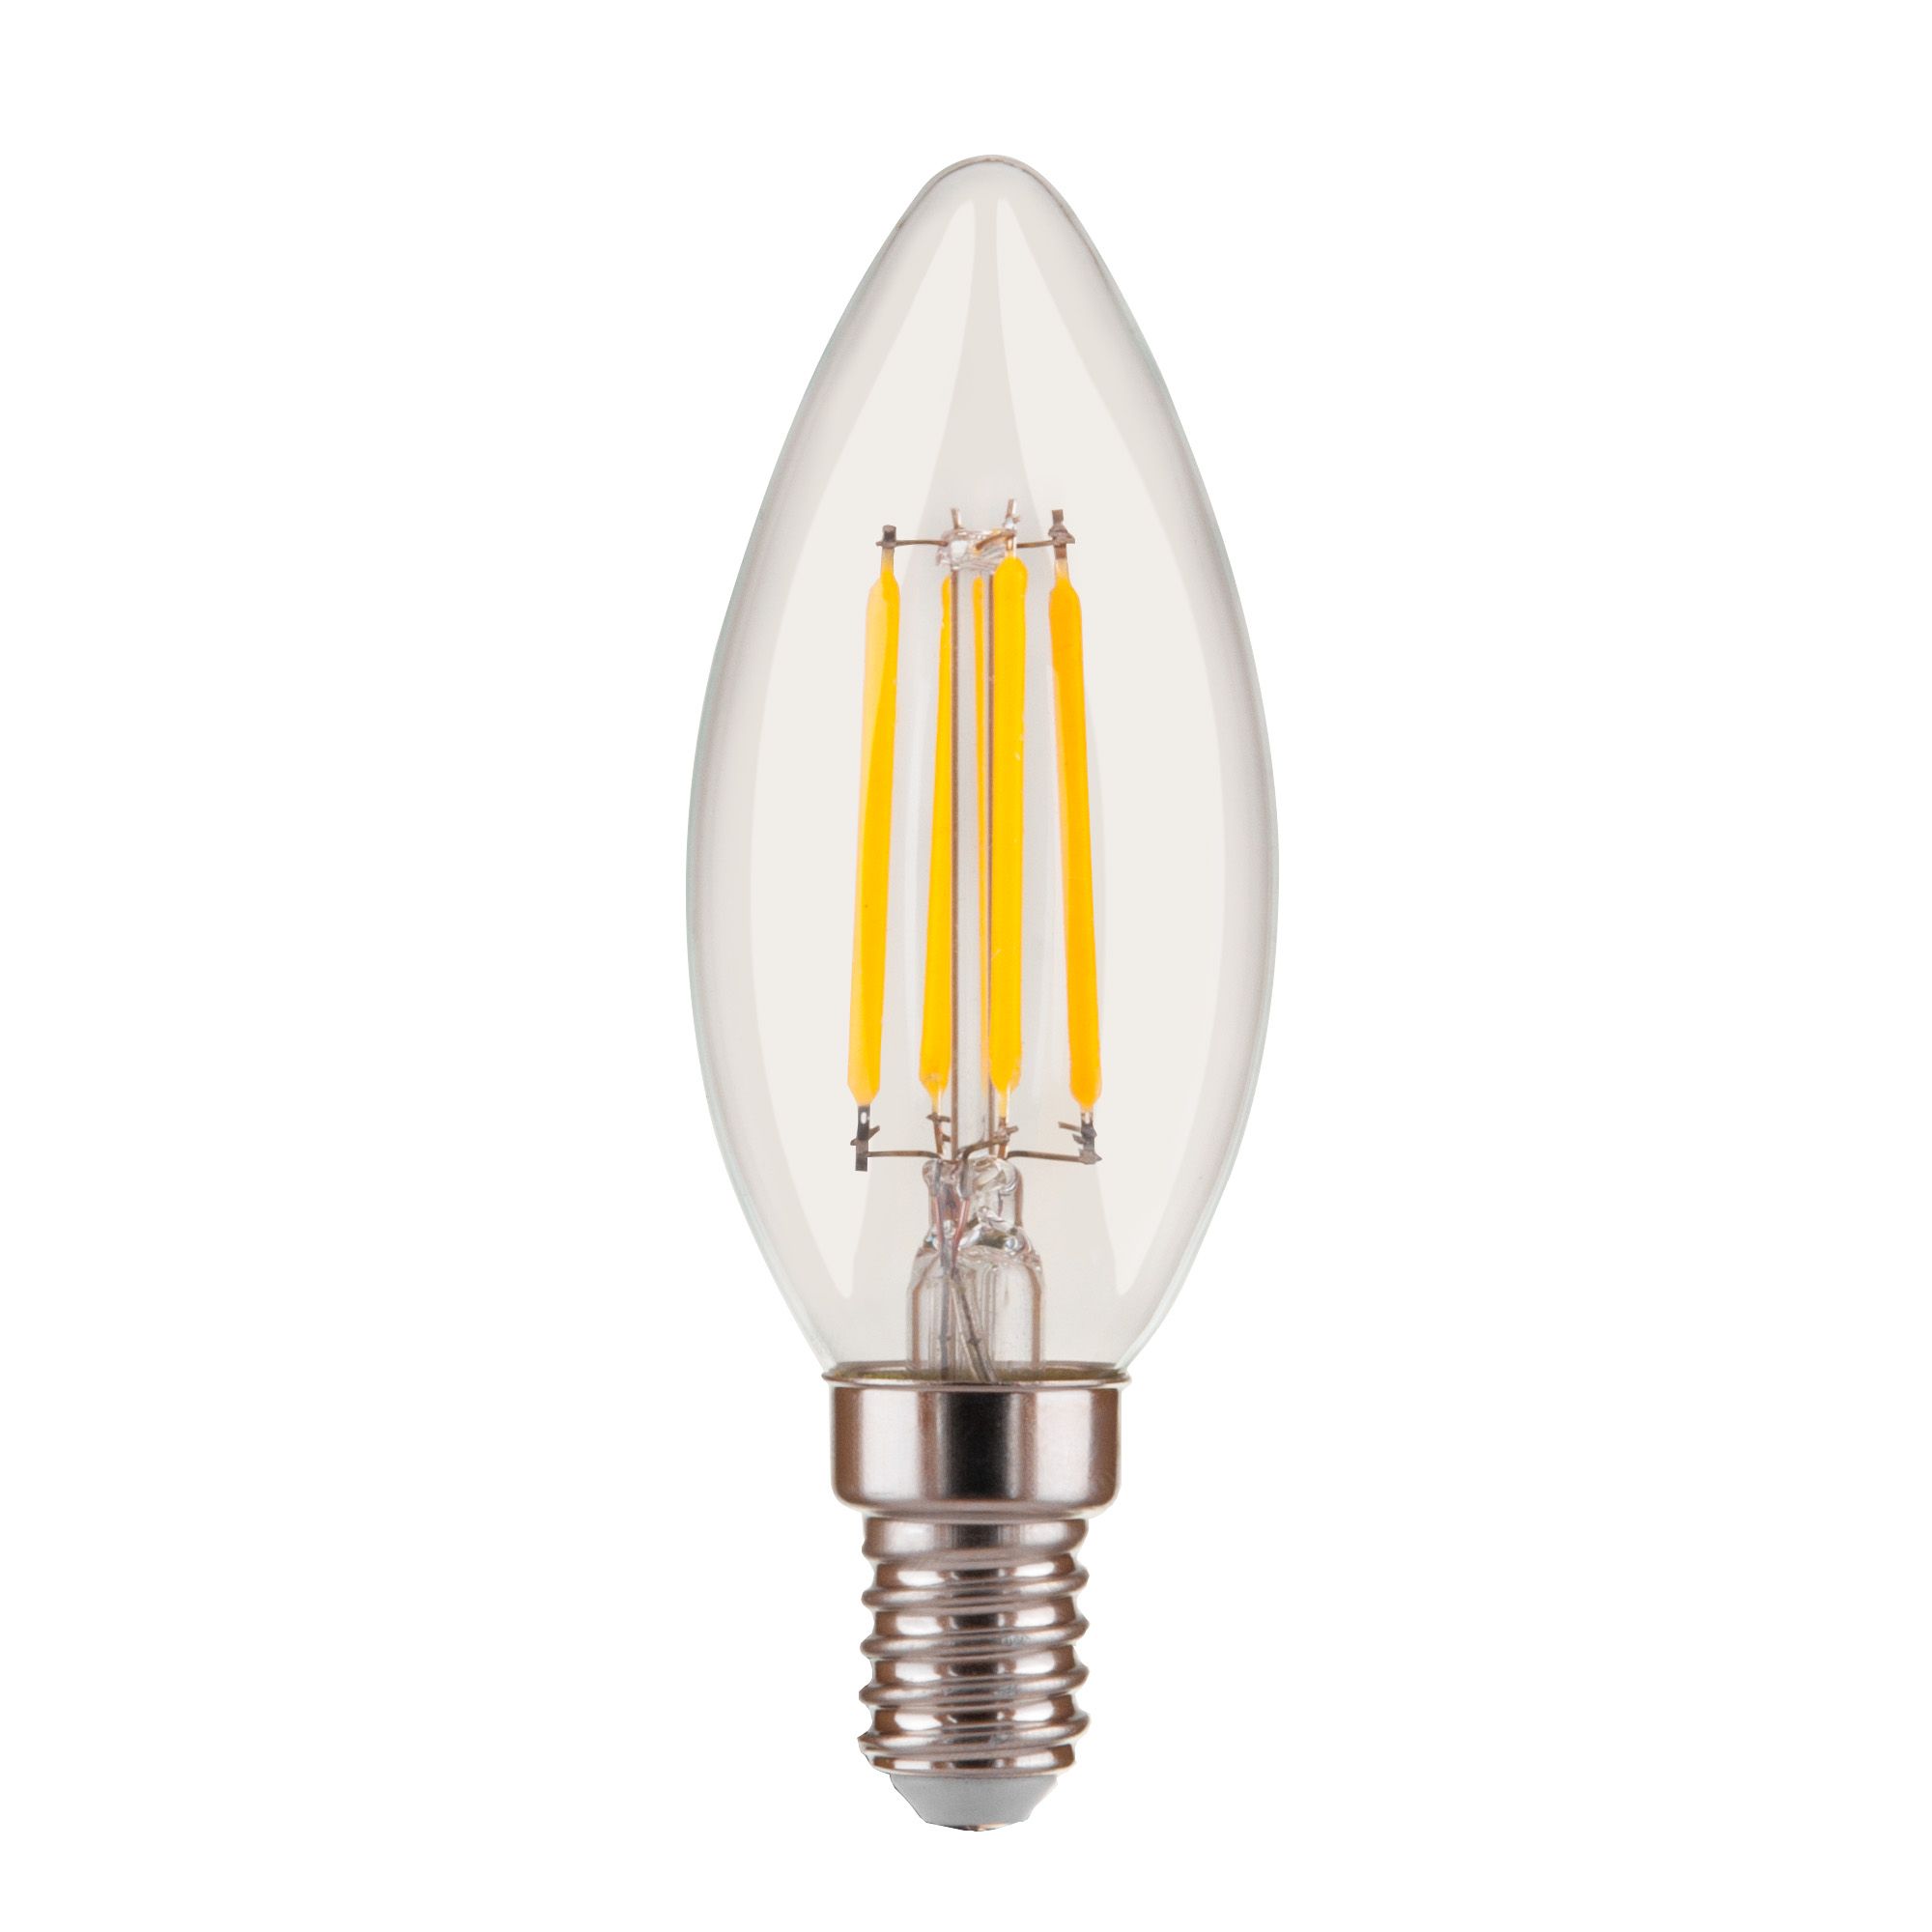 Филаментная светодиодная лампа "Свеча" Dimmable C35 5W 4200K E14 BL134. Фото 2